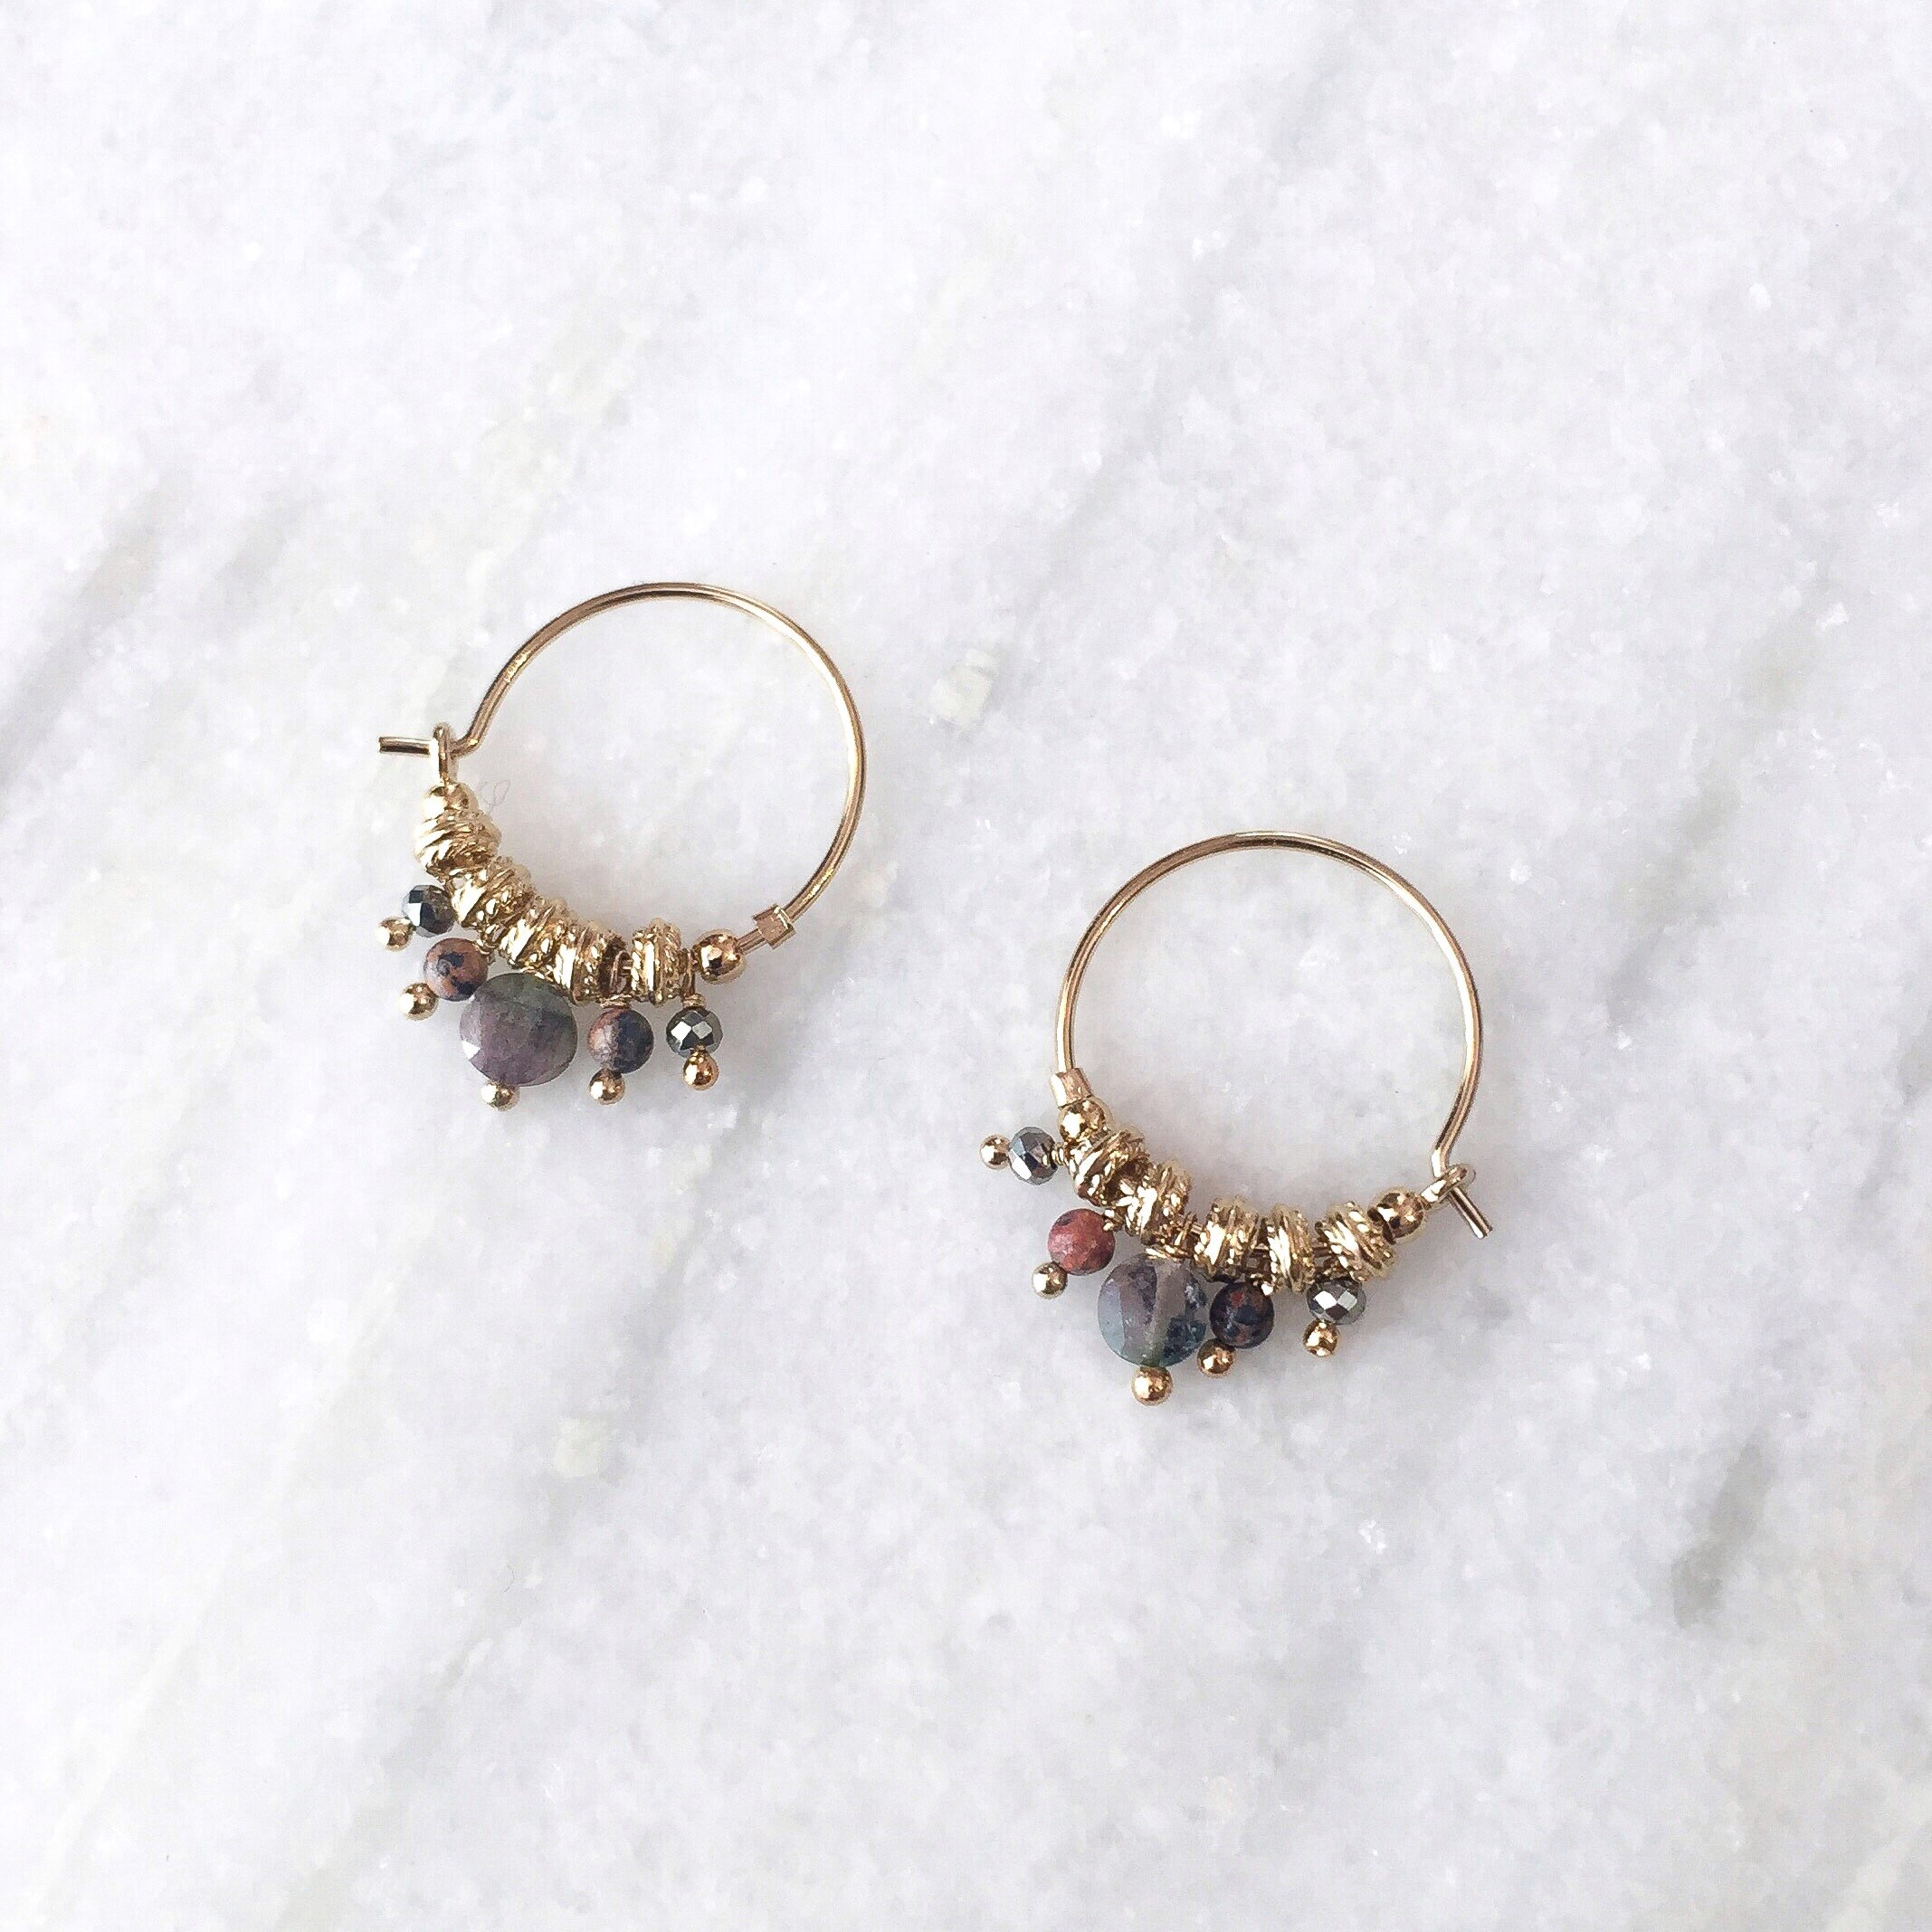 Gemstone earrings,Hoop earrings,Jade earrings,Turquoise earrings,Dainty earrings,Beaded earrings,Silver earrings,Beach earring,Cute earrings